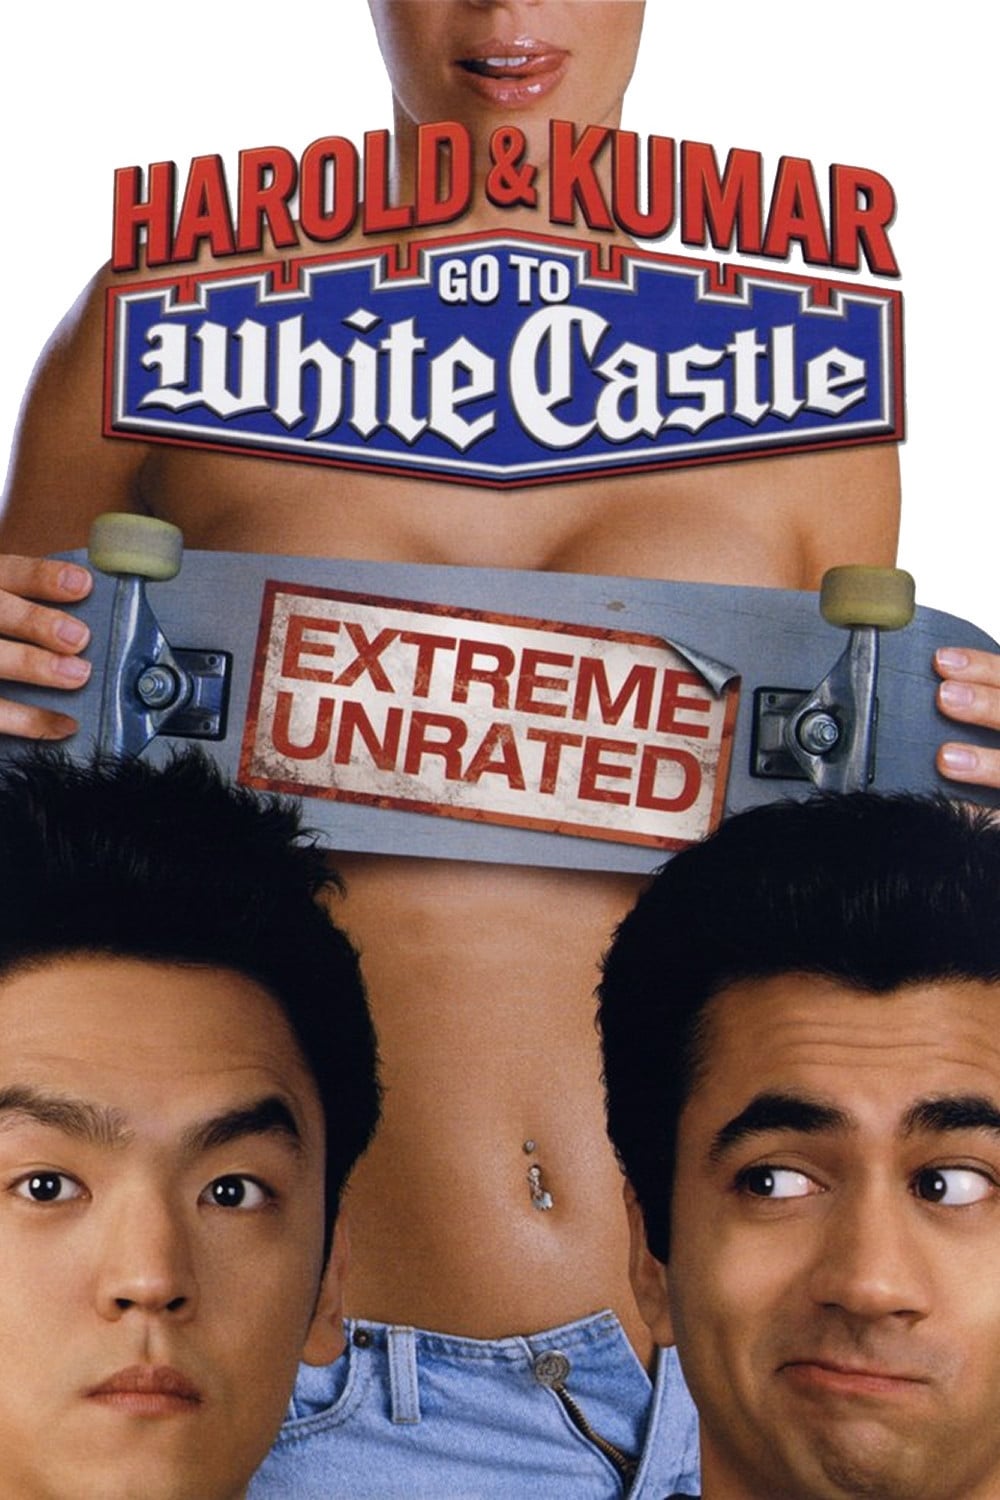 Harold & Kumar Go to White Castle - Trailer.